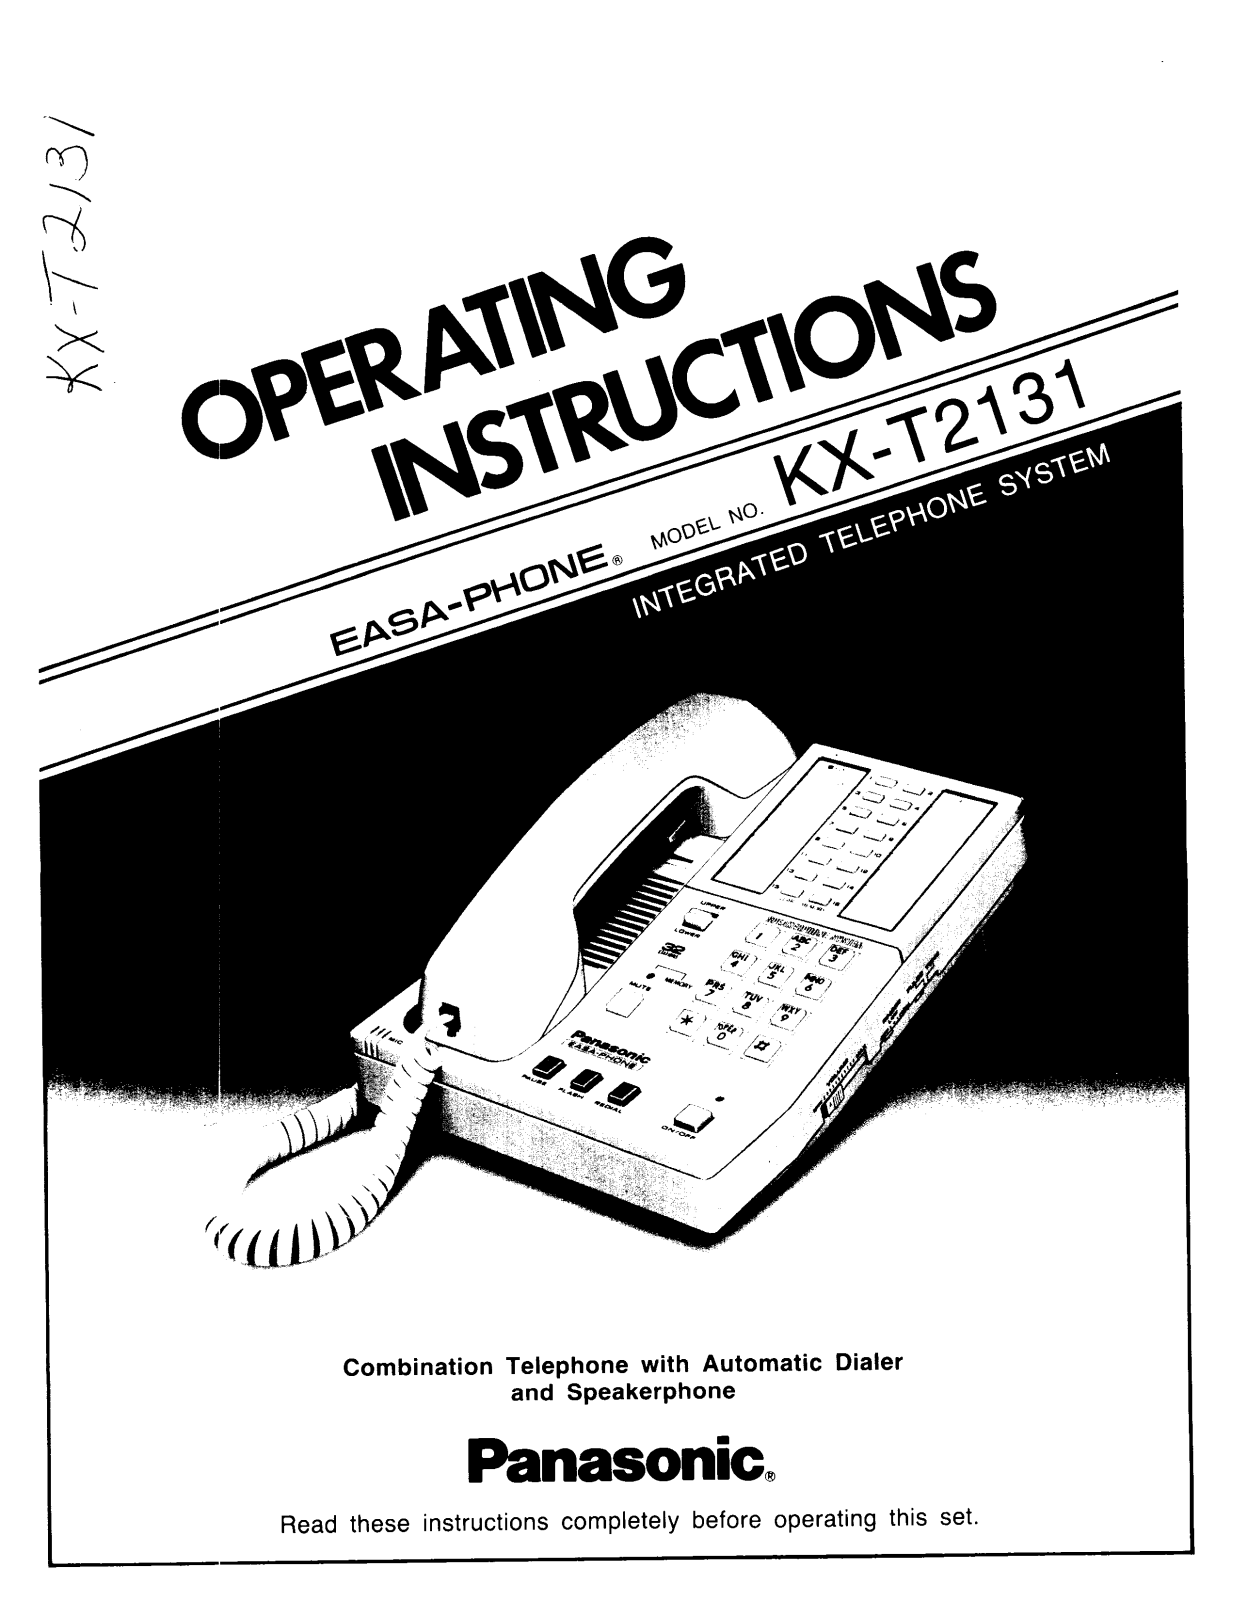 Panasonic kx-t2131 Operation Manual